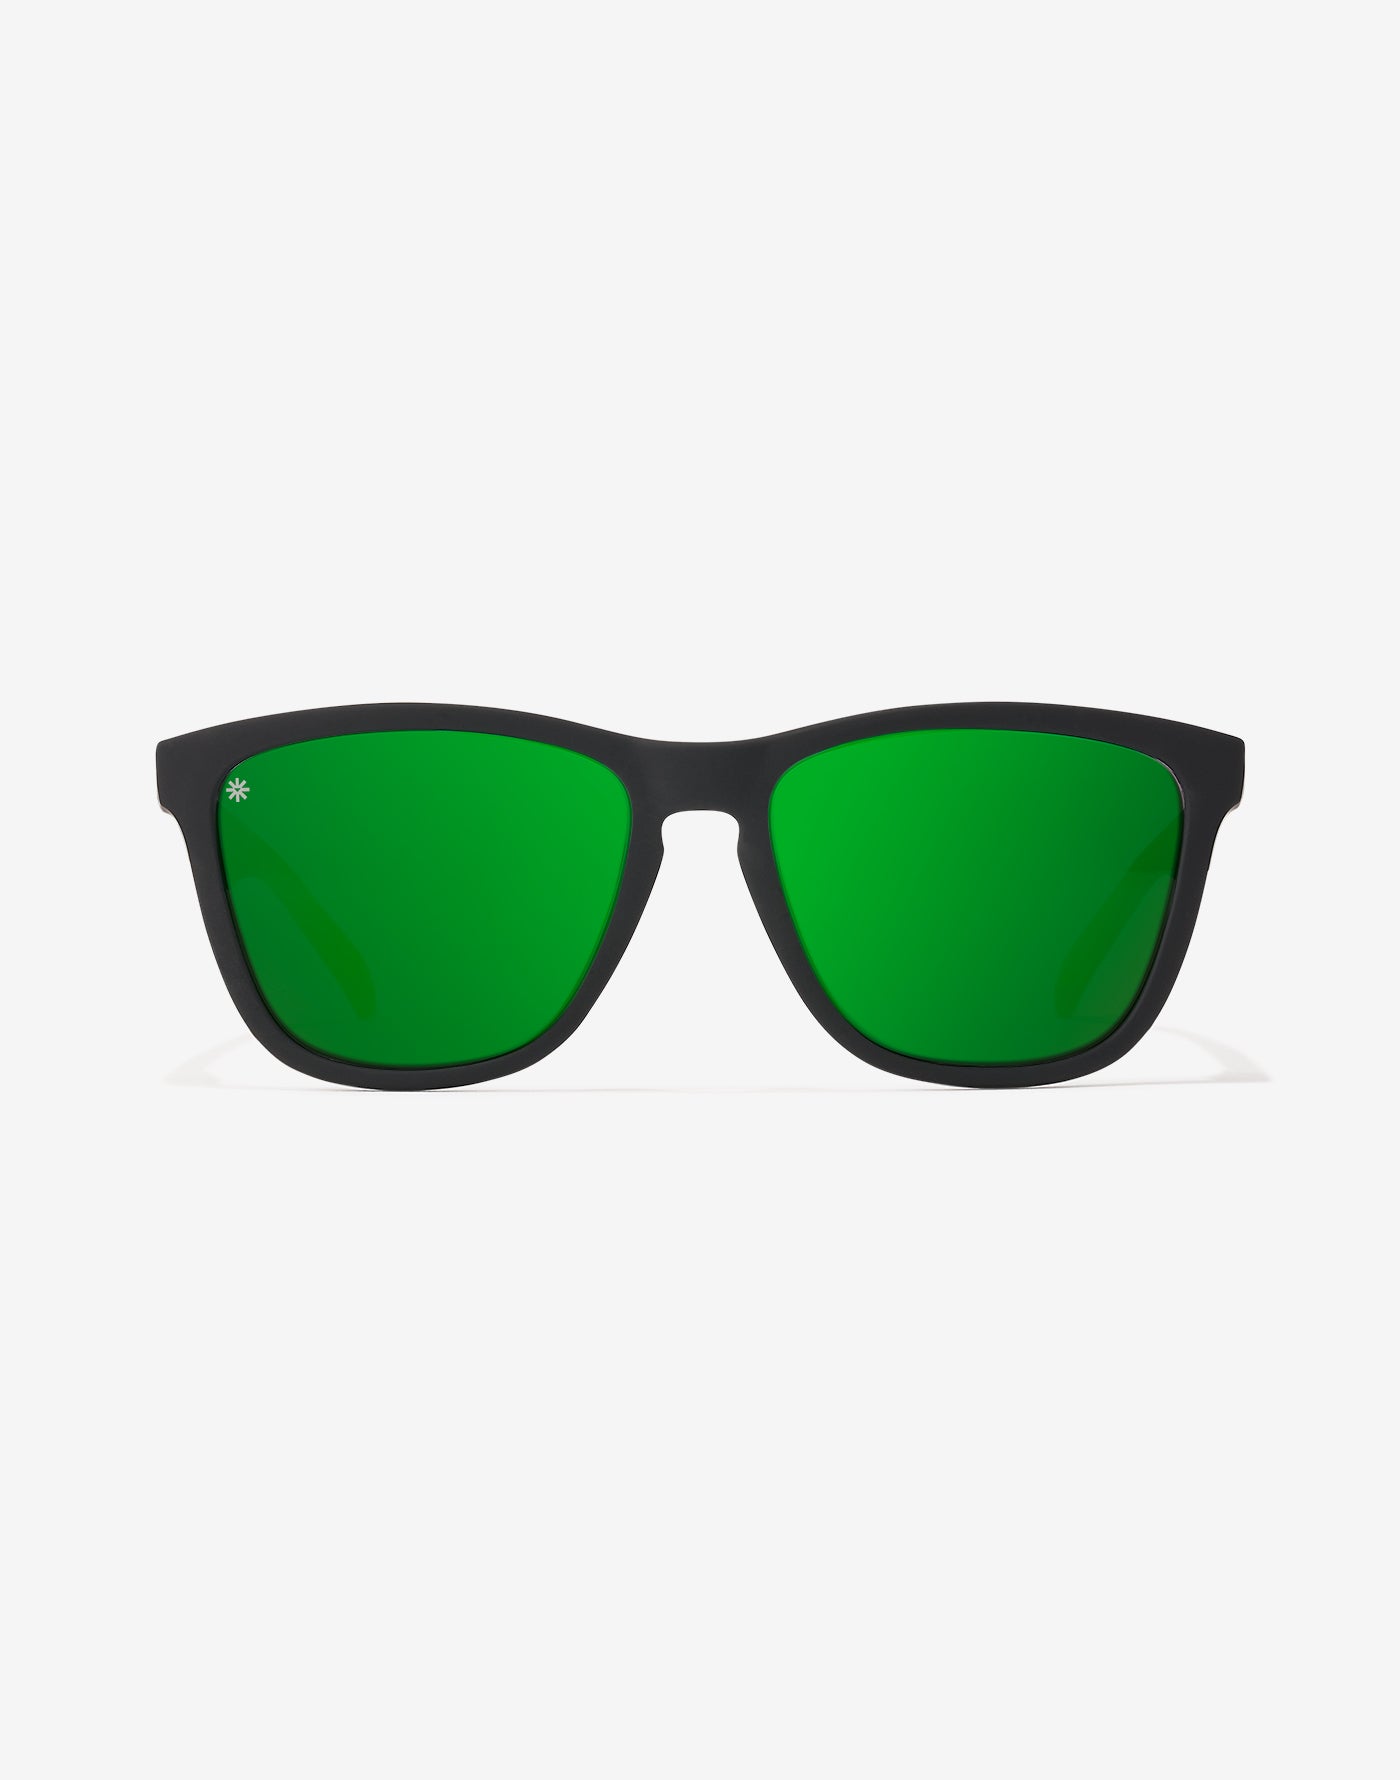 Prime Shine Tortoise Polarized Sunglasses - Twinyards